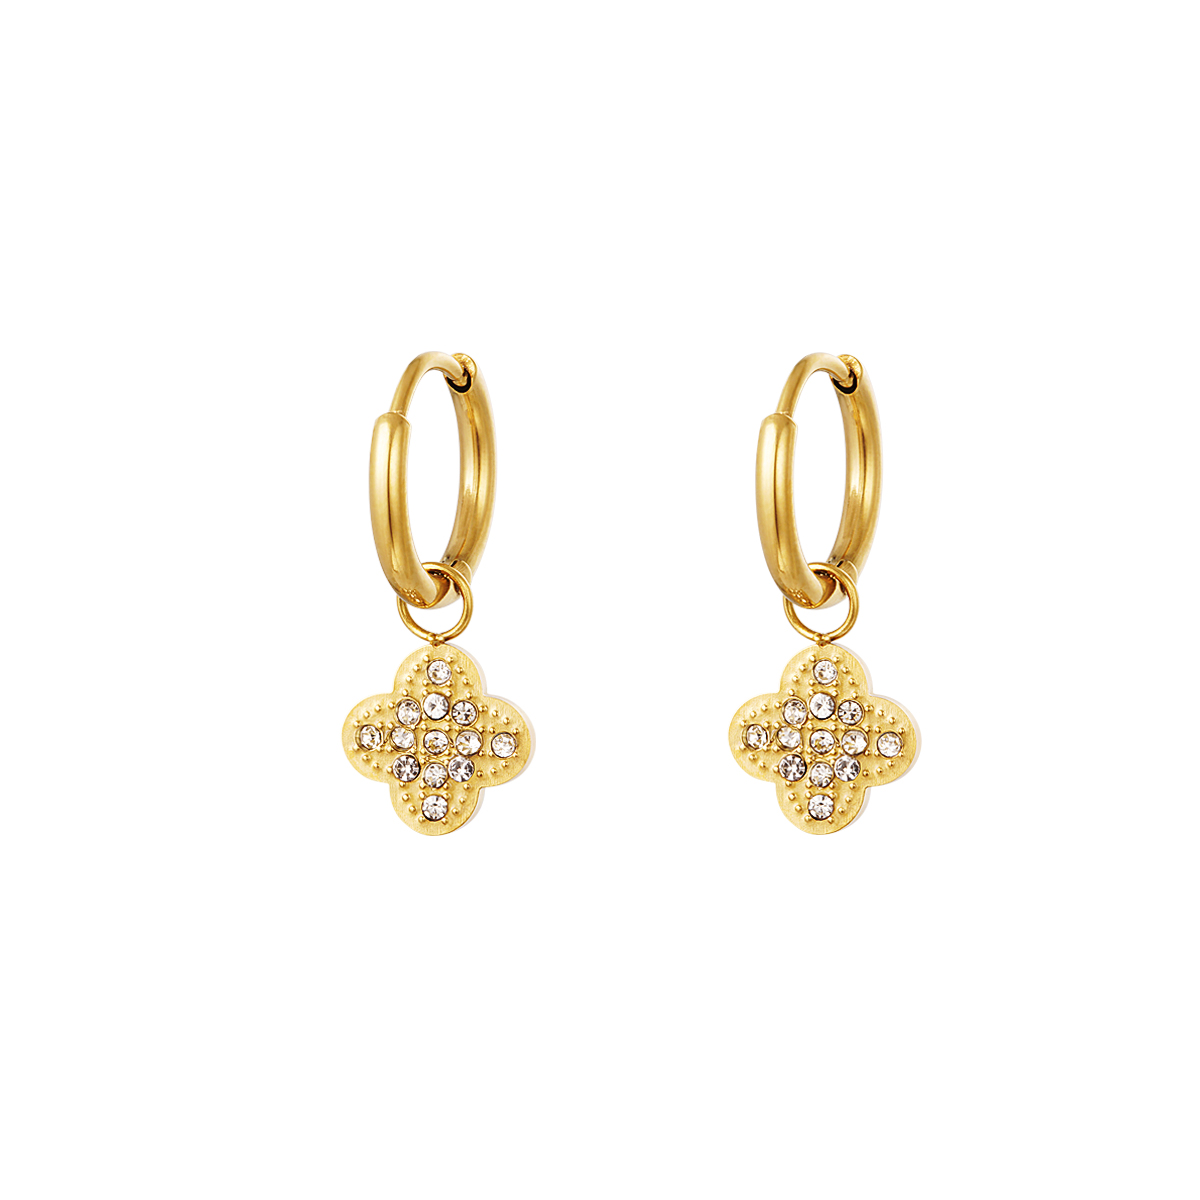 Zircon clover earrings